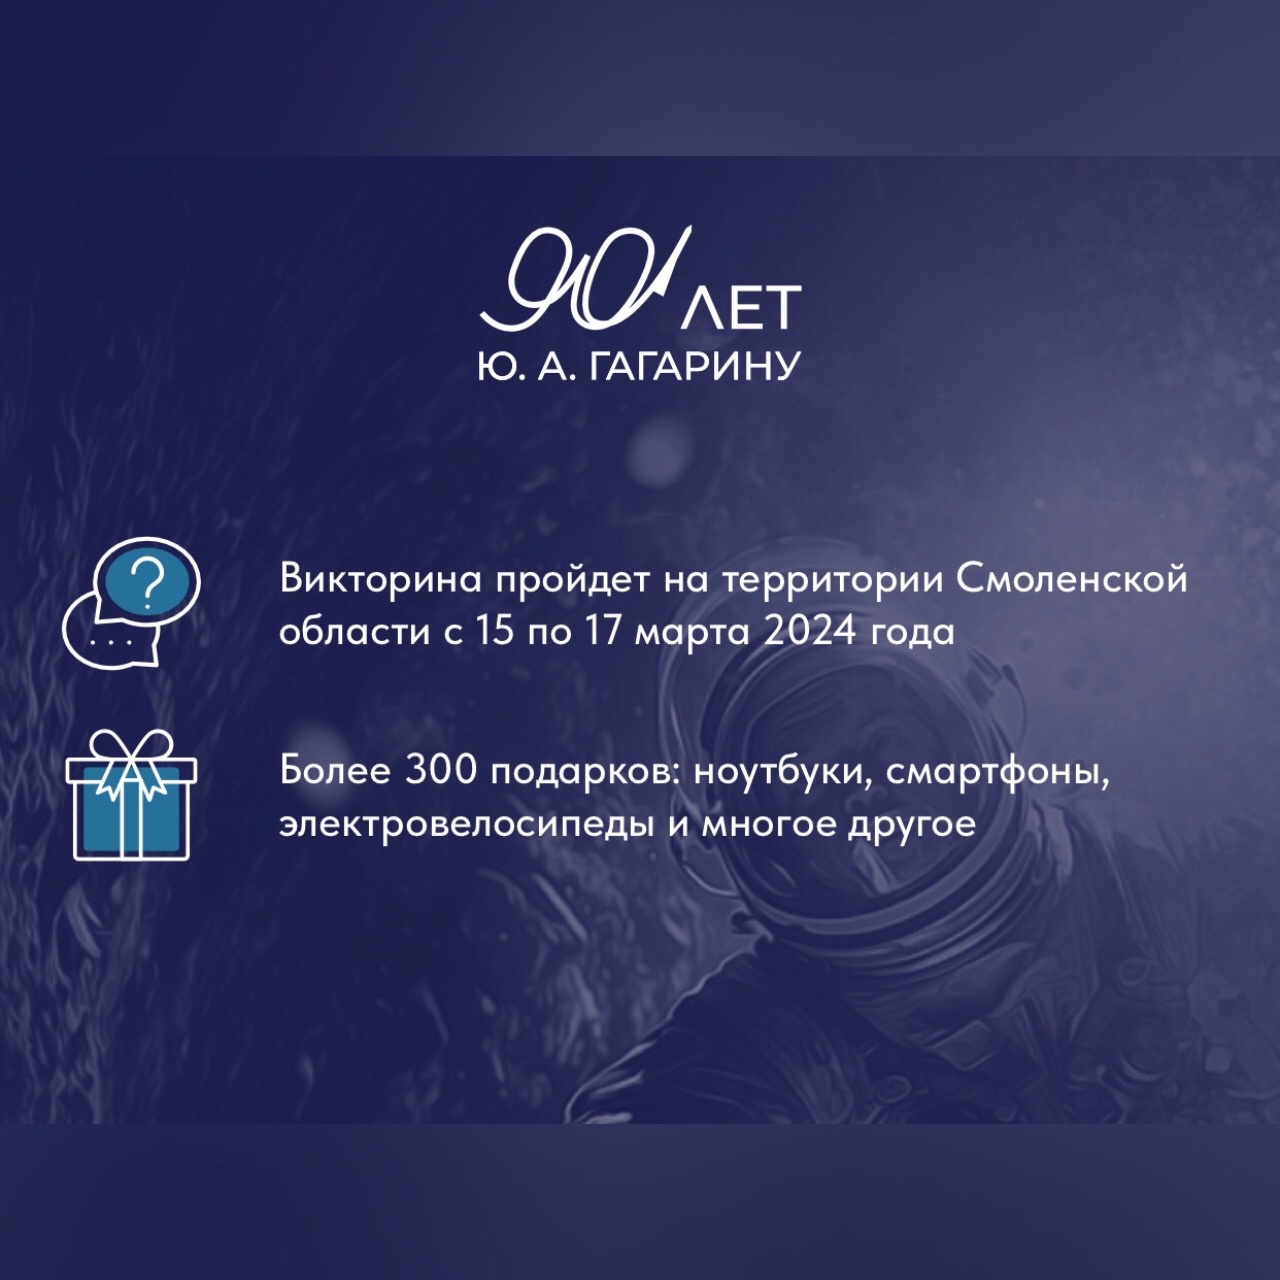 Сотни смолян получат подарки за участие в Викторине к 90-летию Юрия Гагарина